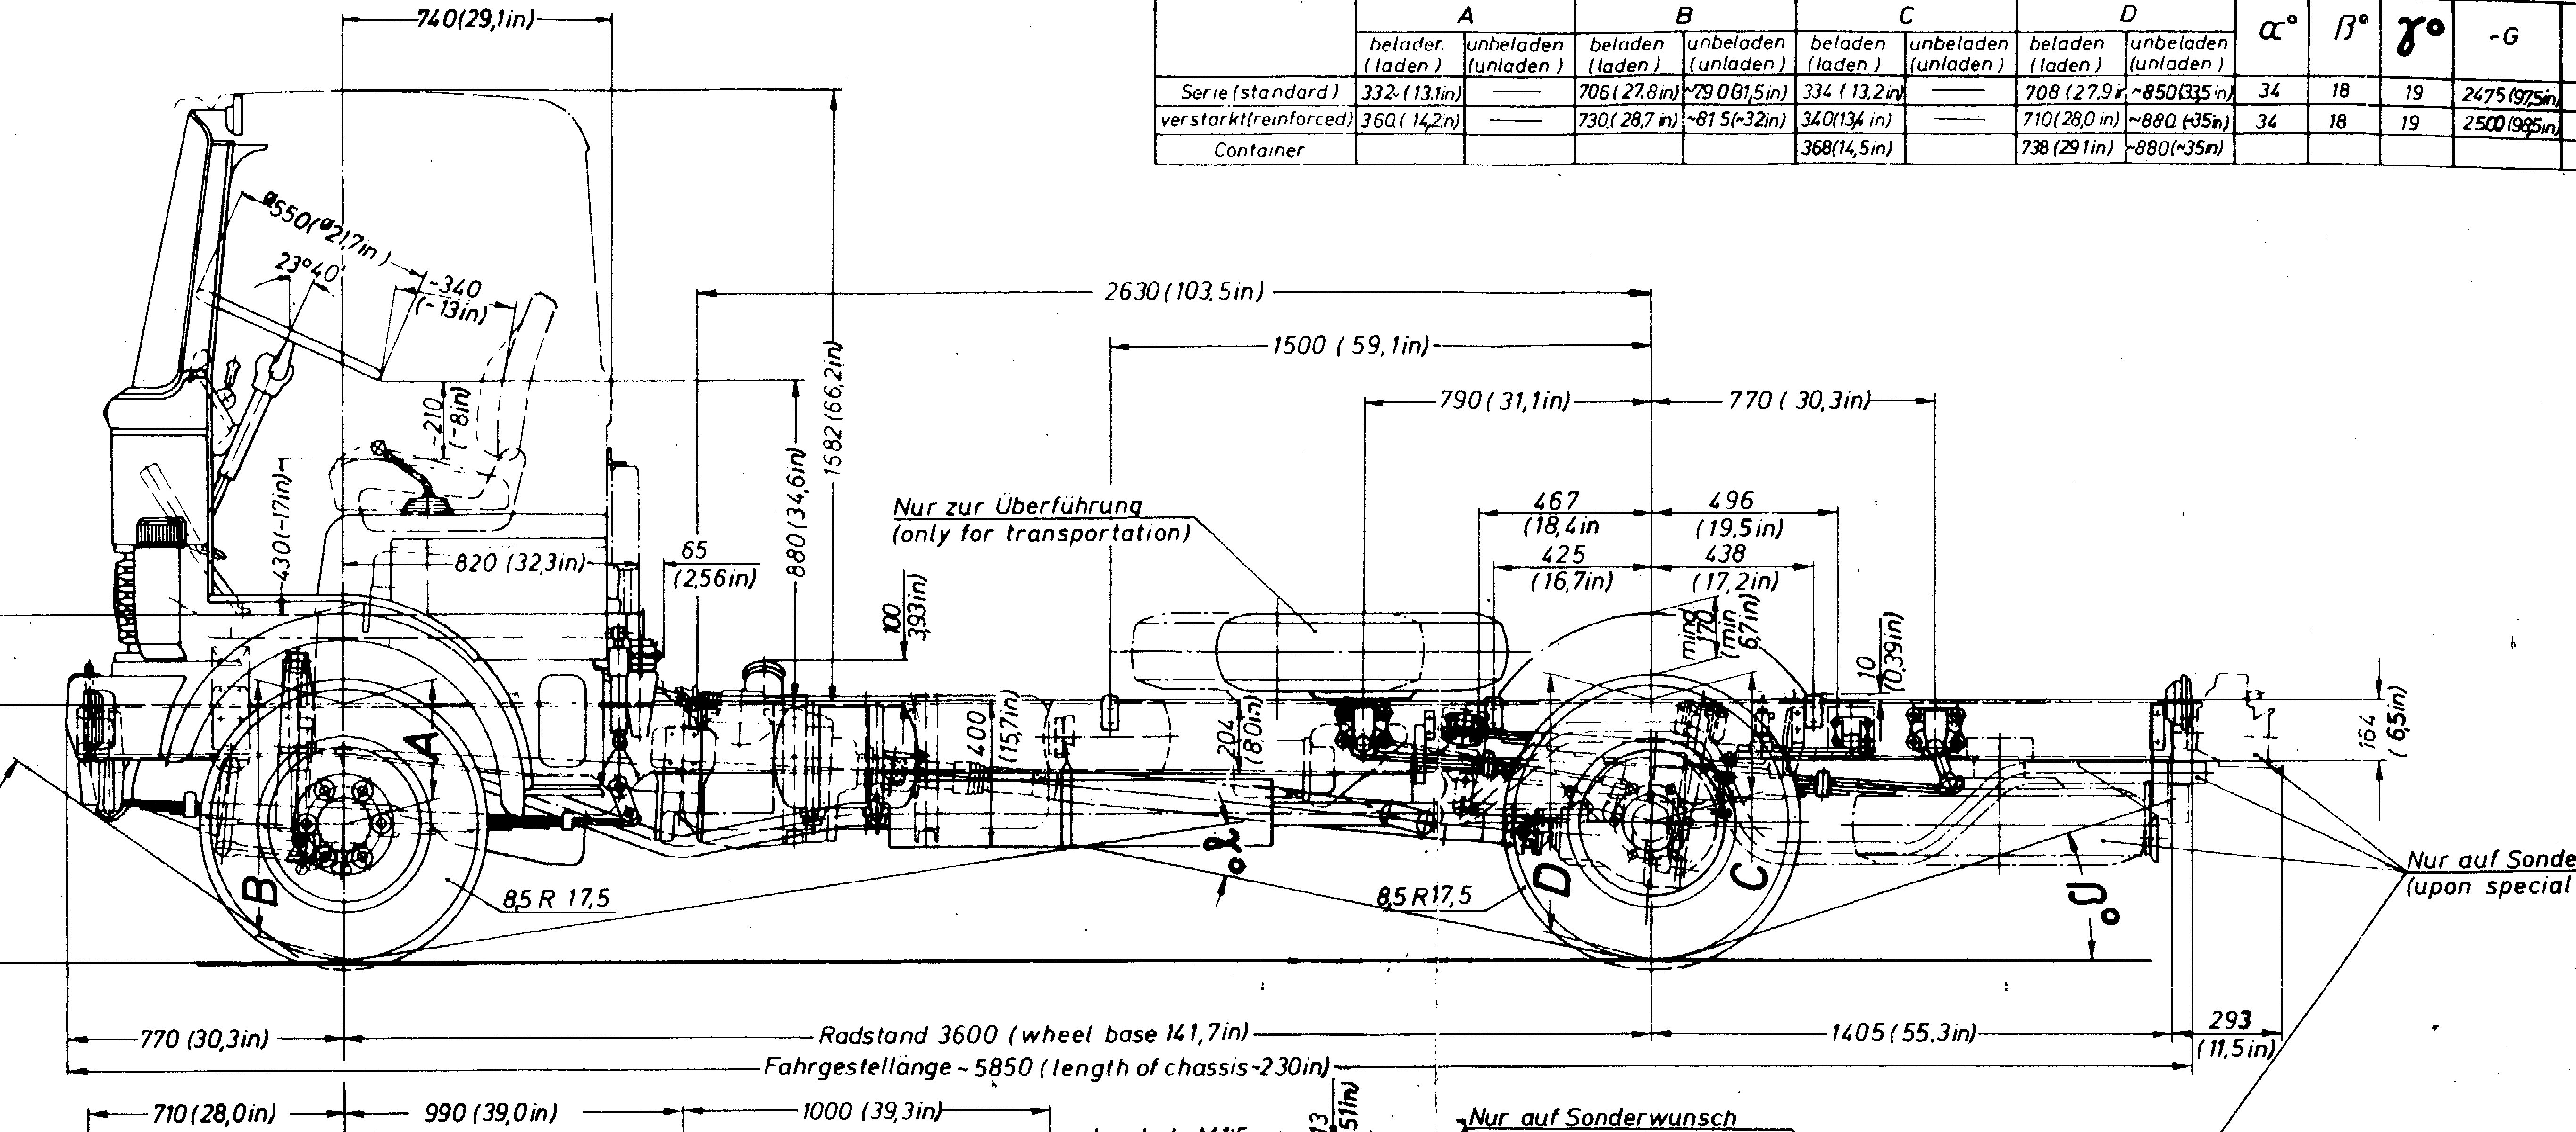 Mercedes-Benz 813 blueprint